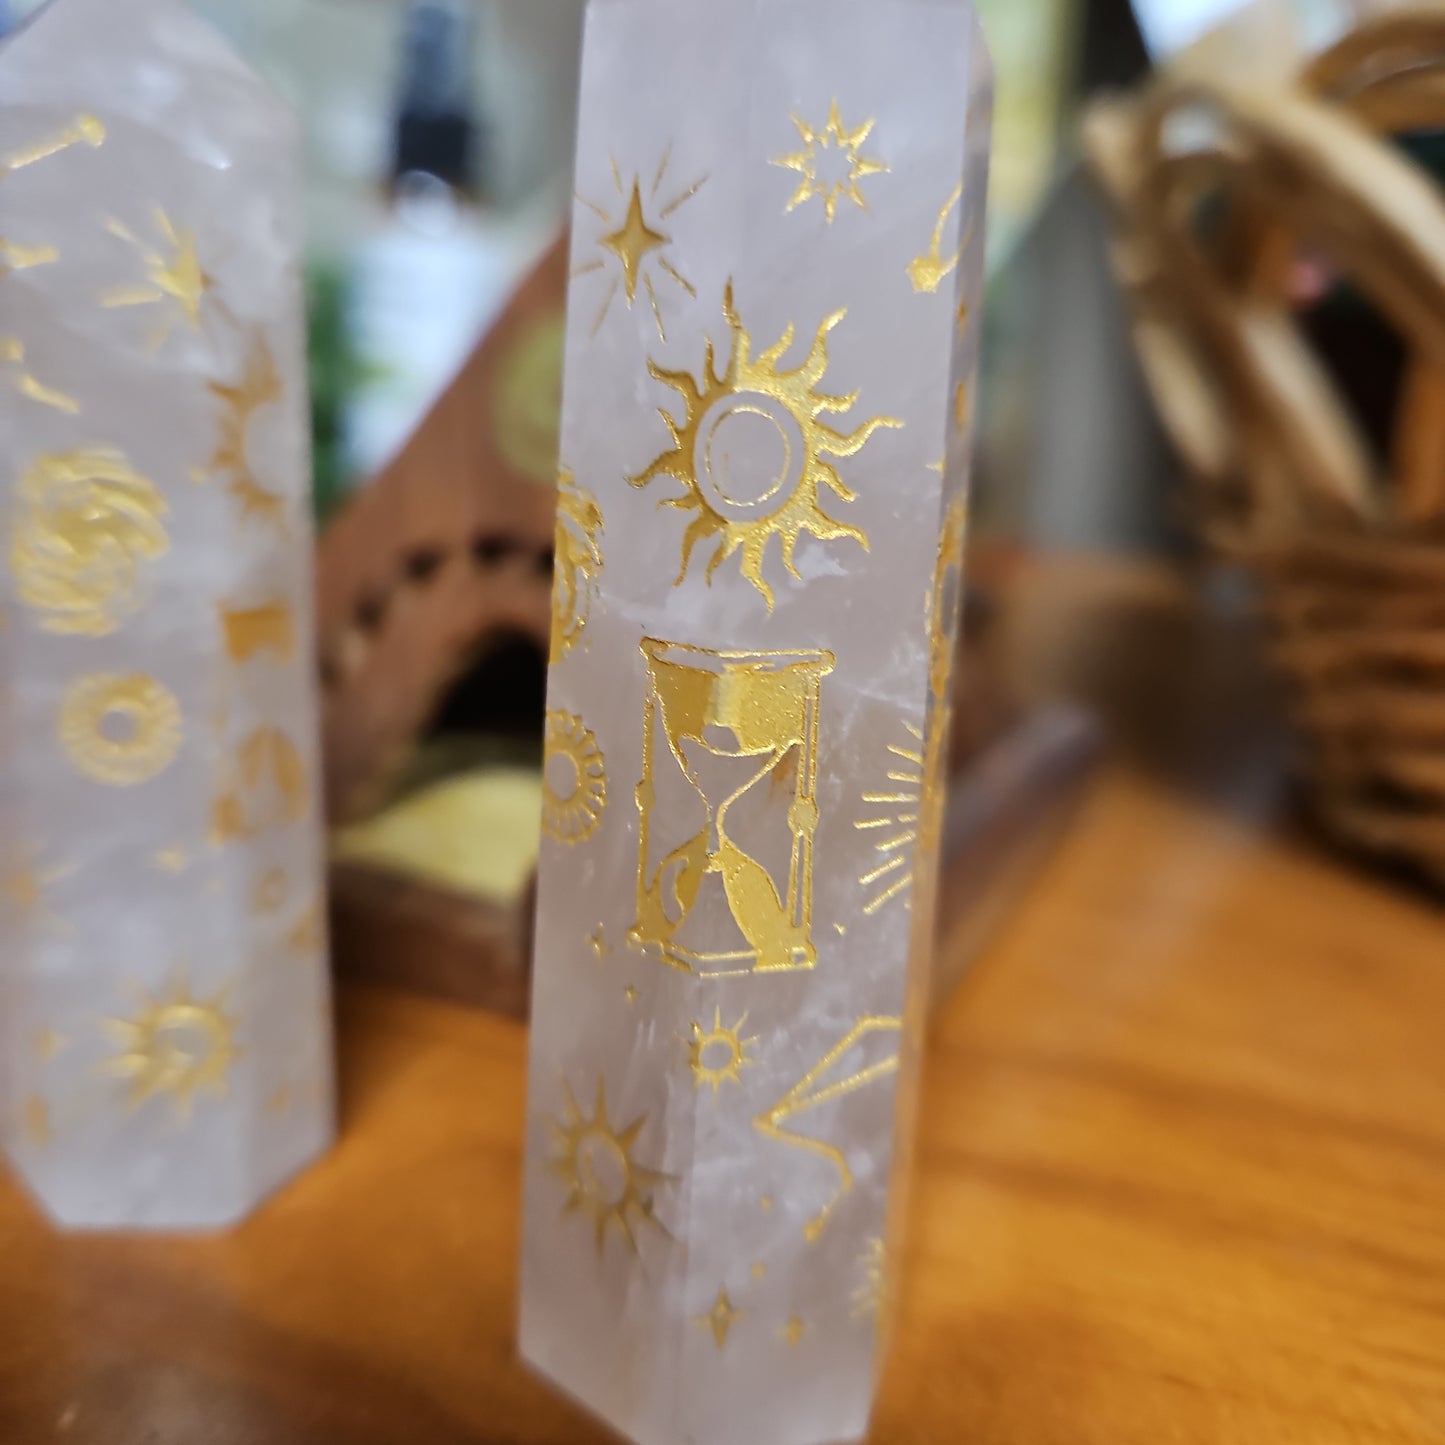 Rose Quartz Towers with Mystic Gold Symbols